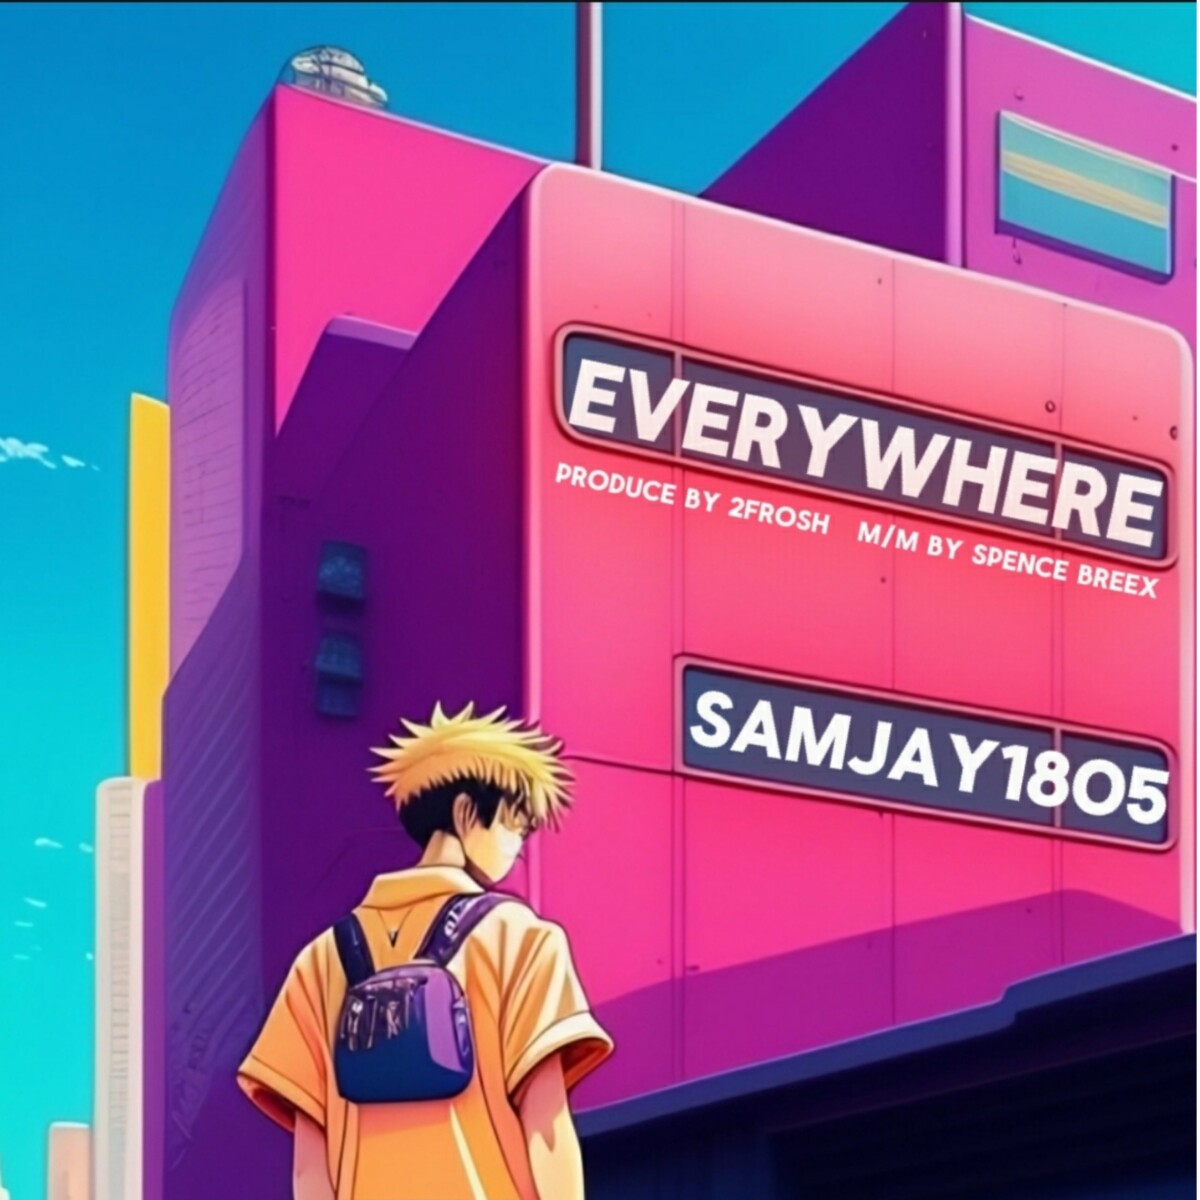 Samjay1805 – Everywhere